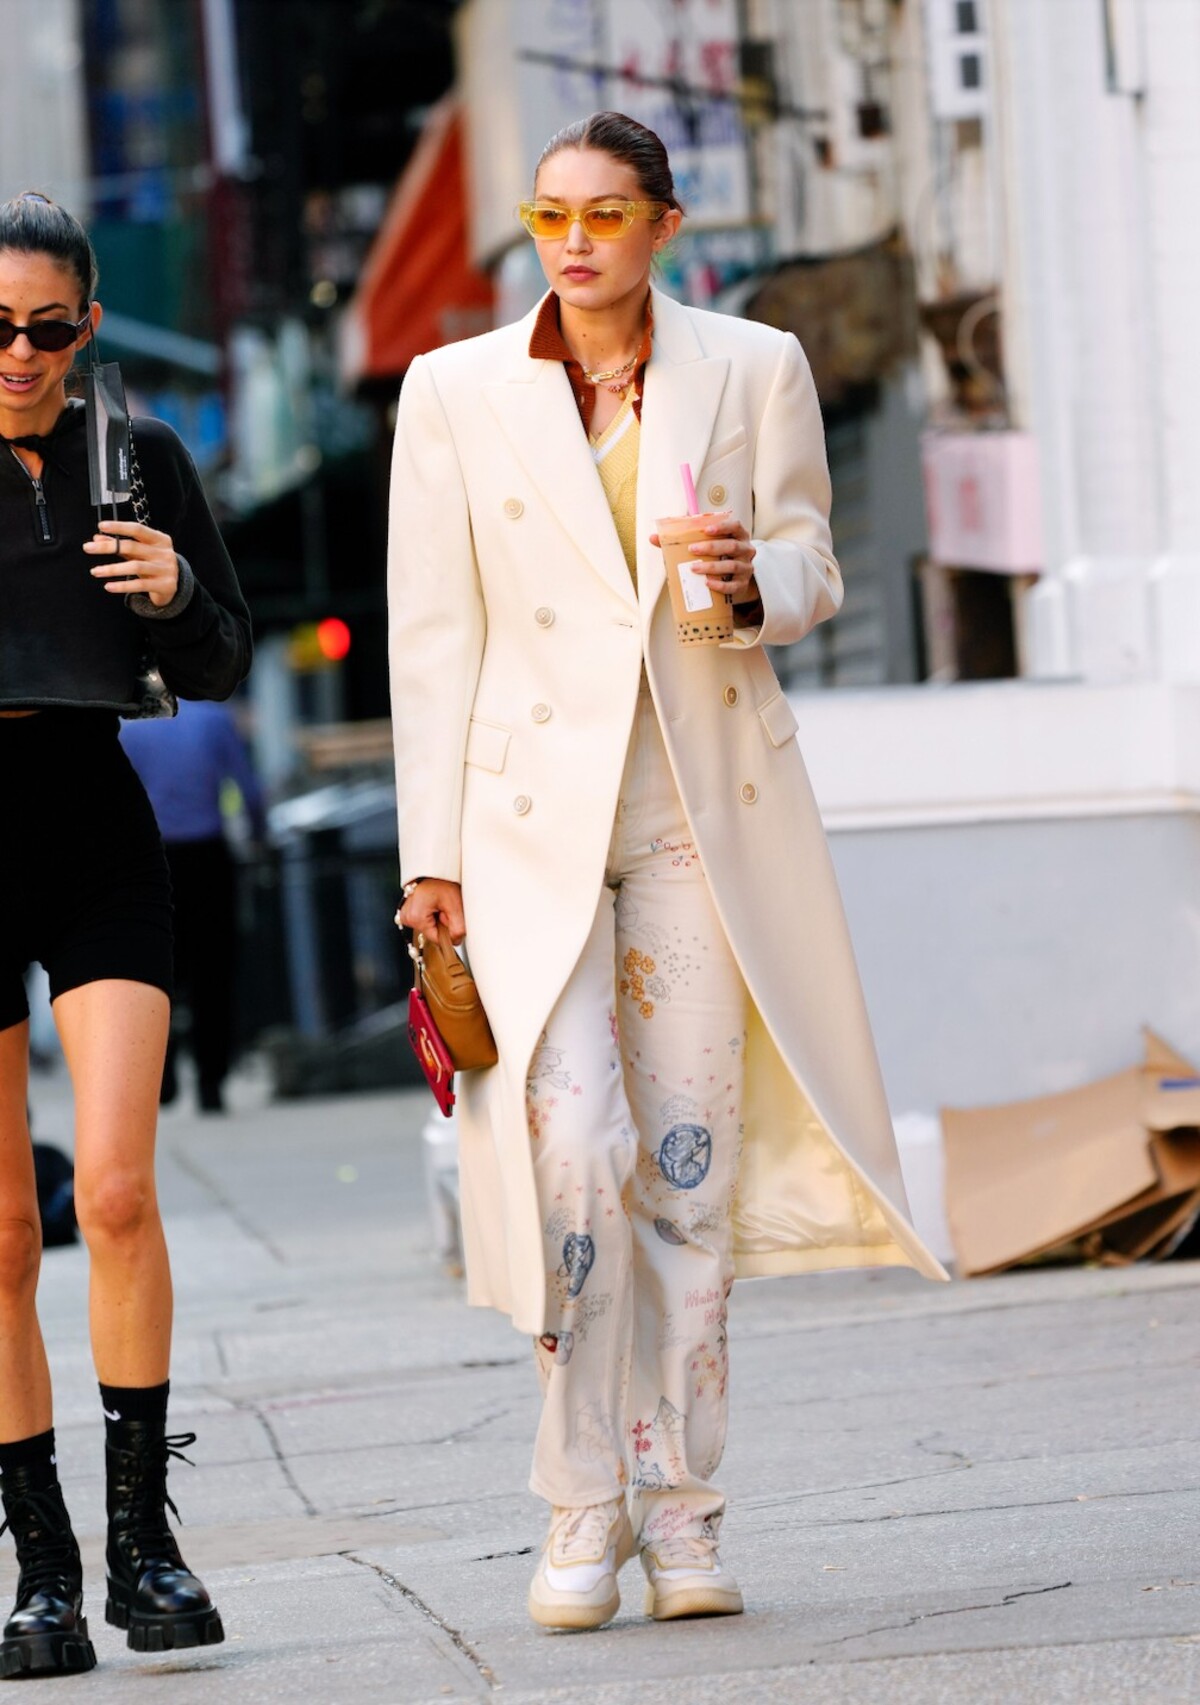 Elegantný kabát je must have každého šatníka. Zladiť ho však môžeš aj s odvážnejšími doplnkami a rôznorodými štýlmi. Inšpirovať sa môžeš napríklad outfitom Gigi Hadid.